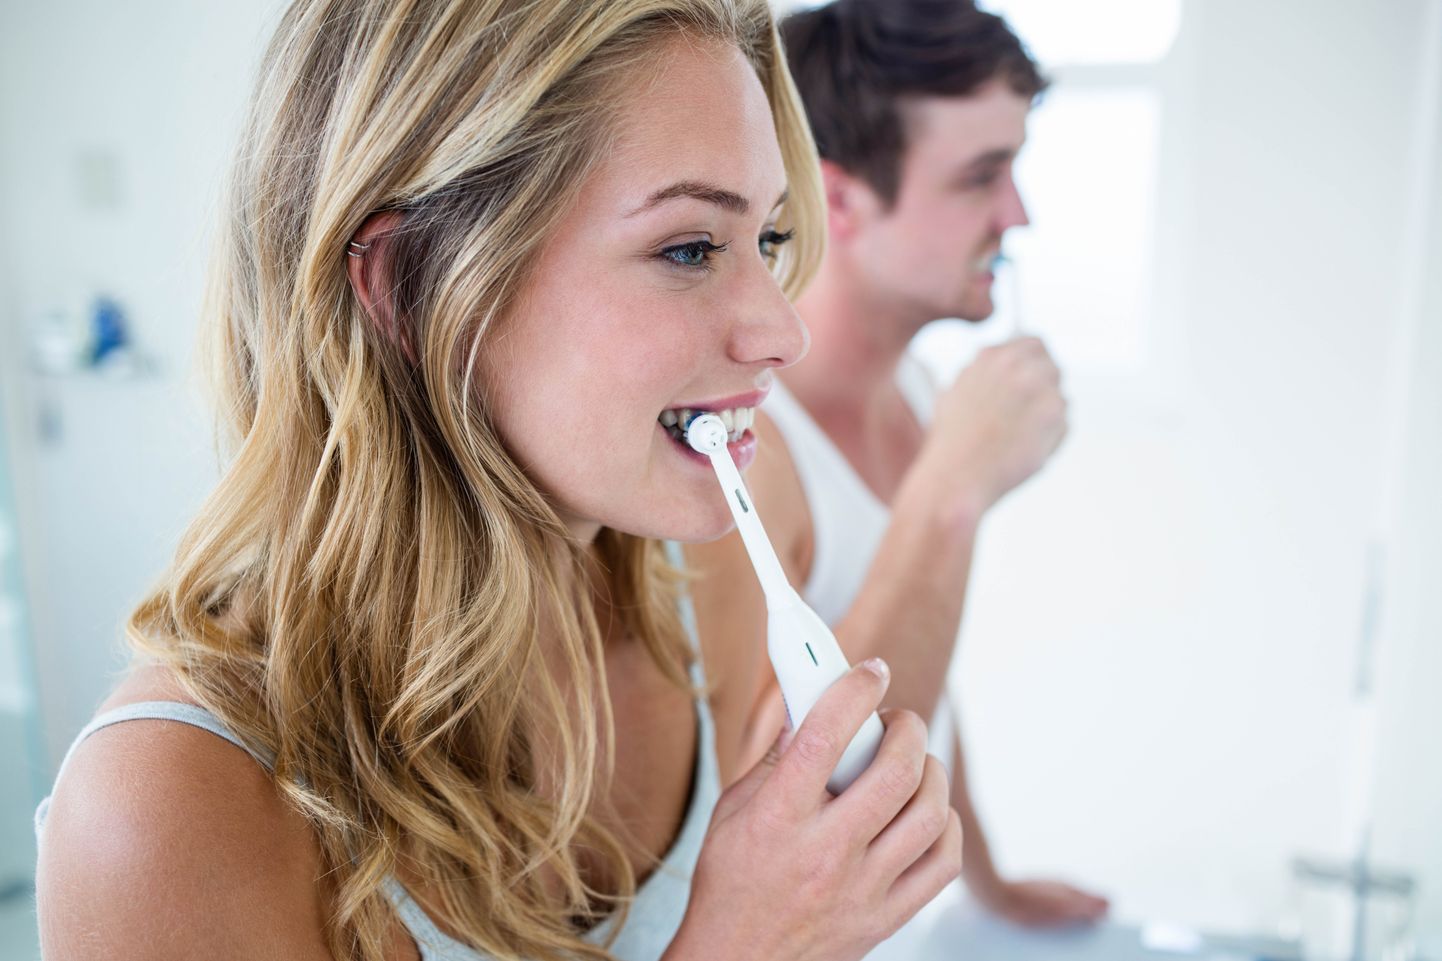 Hea suuhügeeni tagab hammaste hooldus ja hambaarsti visiidid.